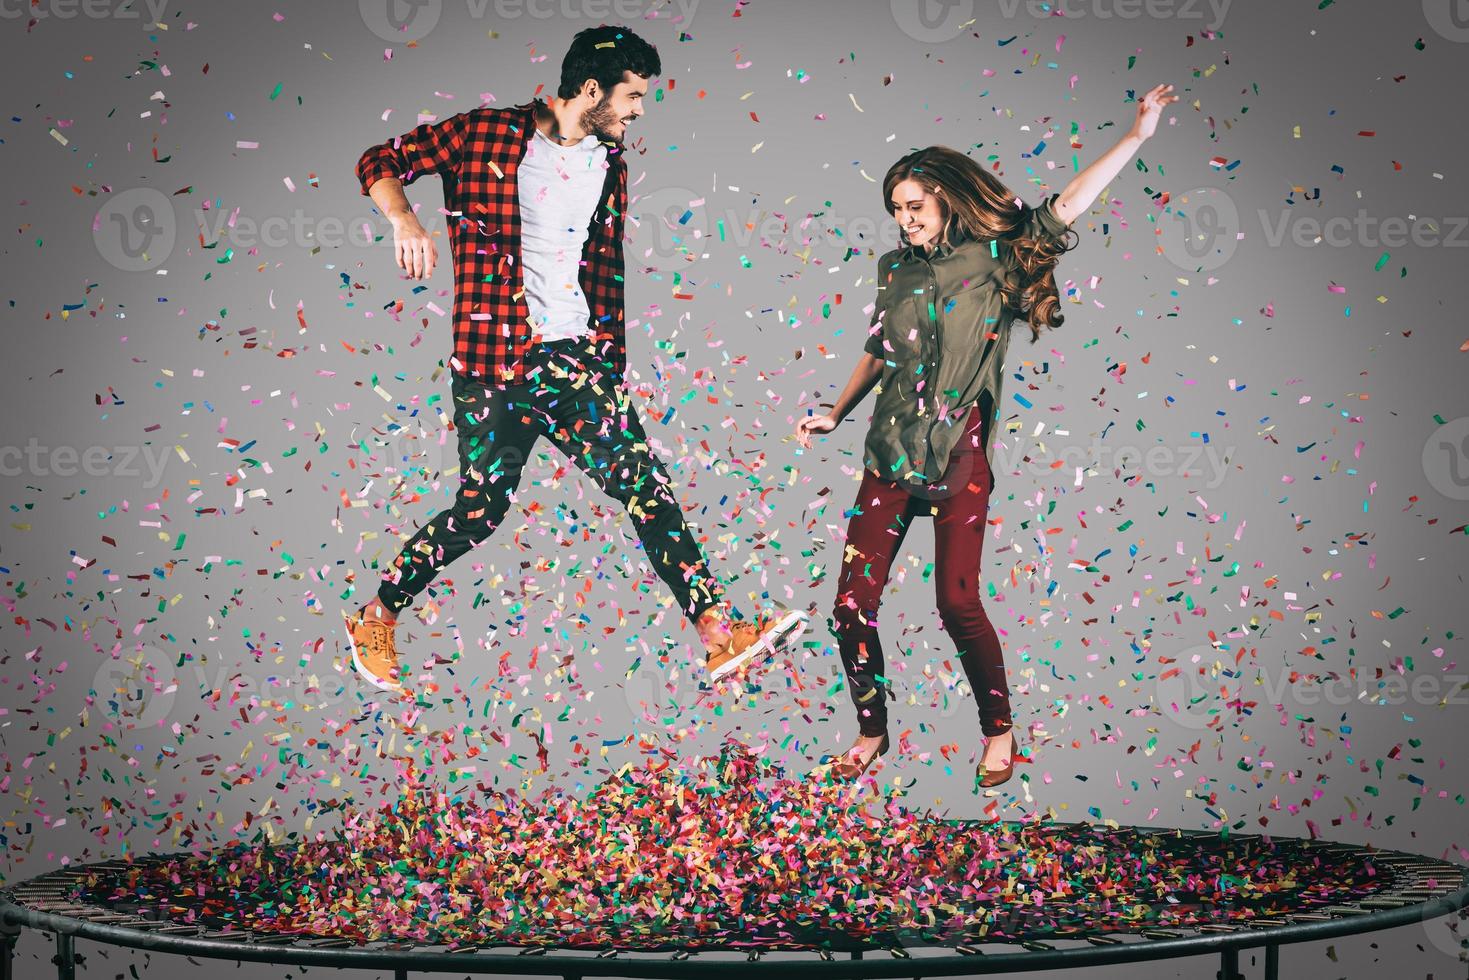 diversión de confeti. toma en el aire de una hermosa pareja joven y alegre saltando en un trampolín junto con confetti a su alrededor foto